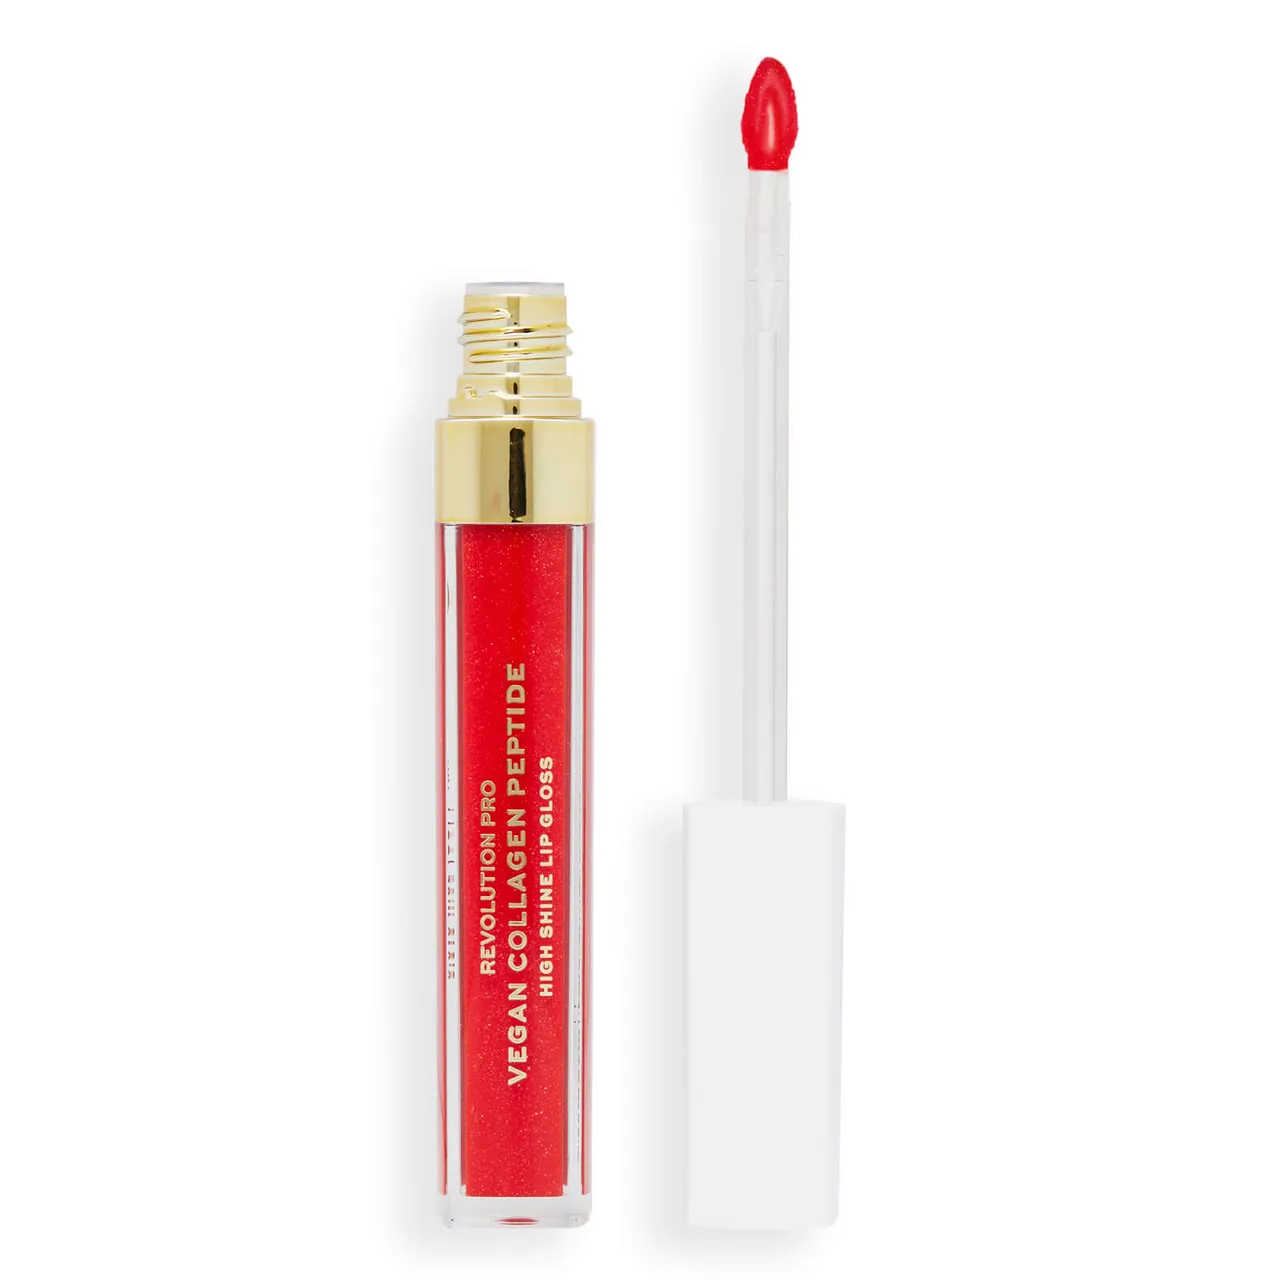 Revolution Pro Vegan Collagen Peptide High Shine Lip Gloss 4ml (Various Shades) - Cherie